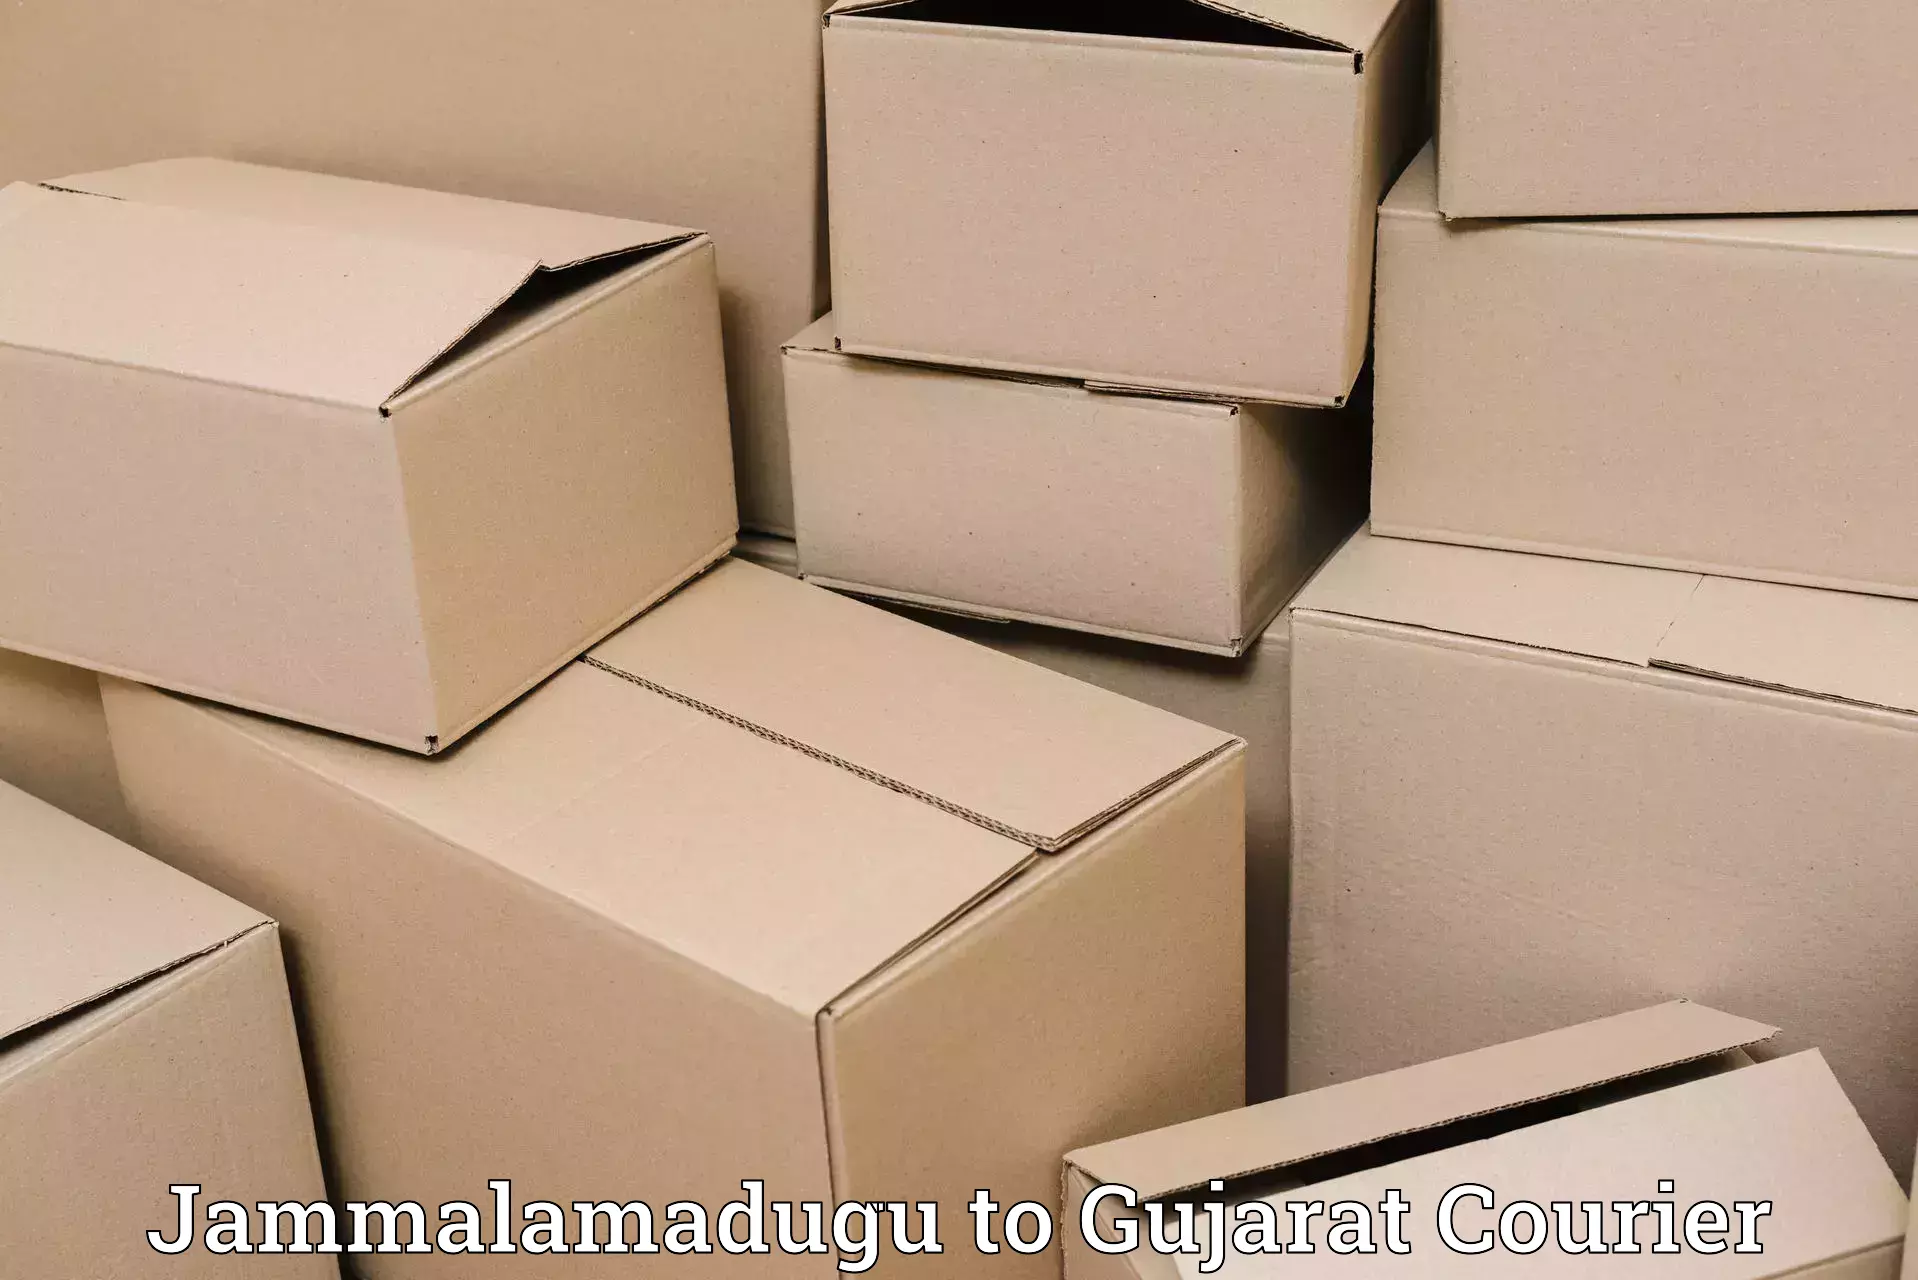 Express mail service Jammalamadugu to Gujarat